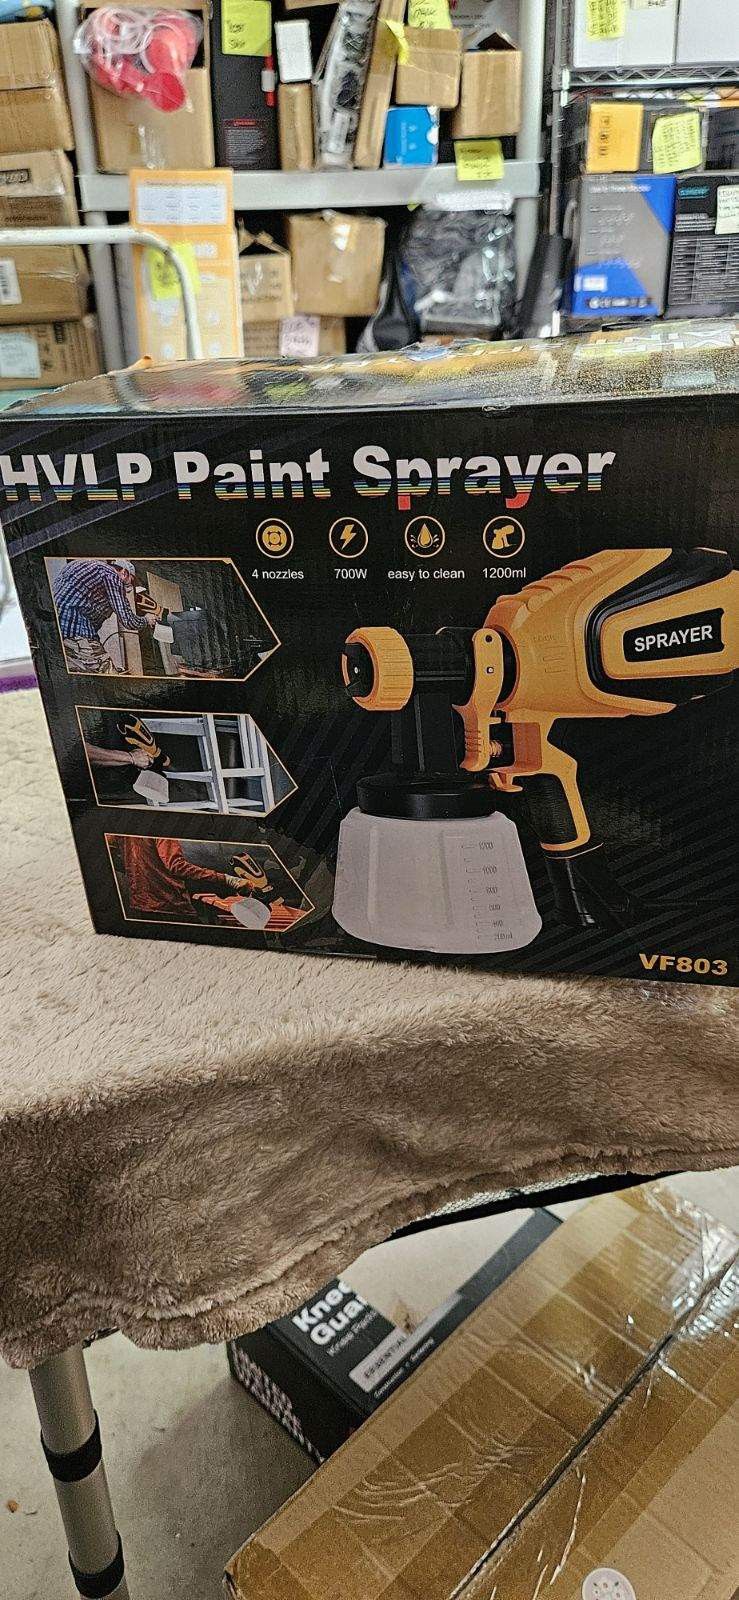 VONFORN Paint Sprayer, 700W HVLP Spray Gun